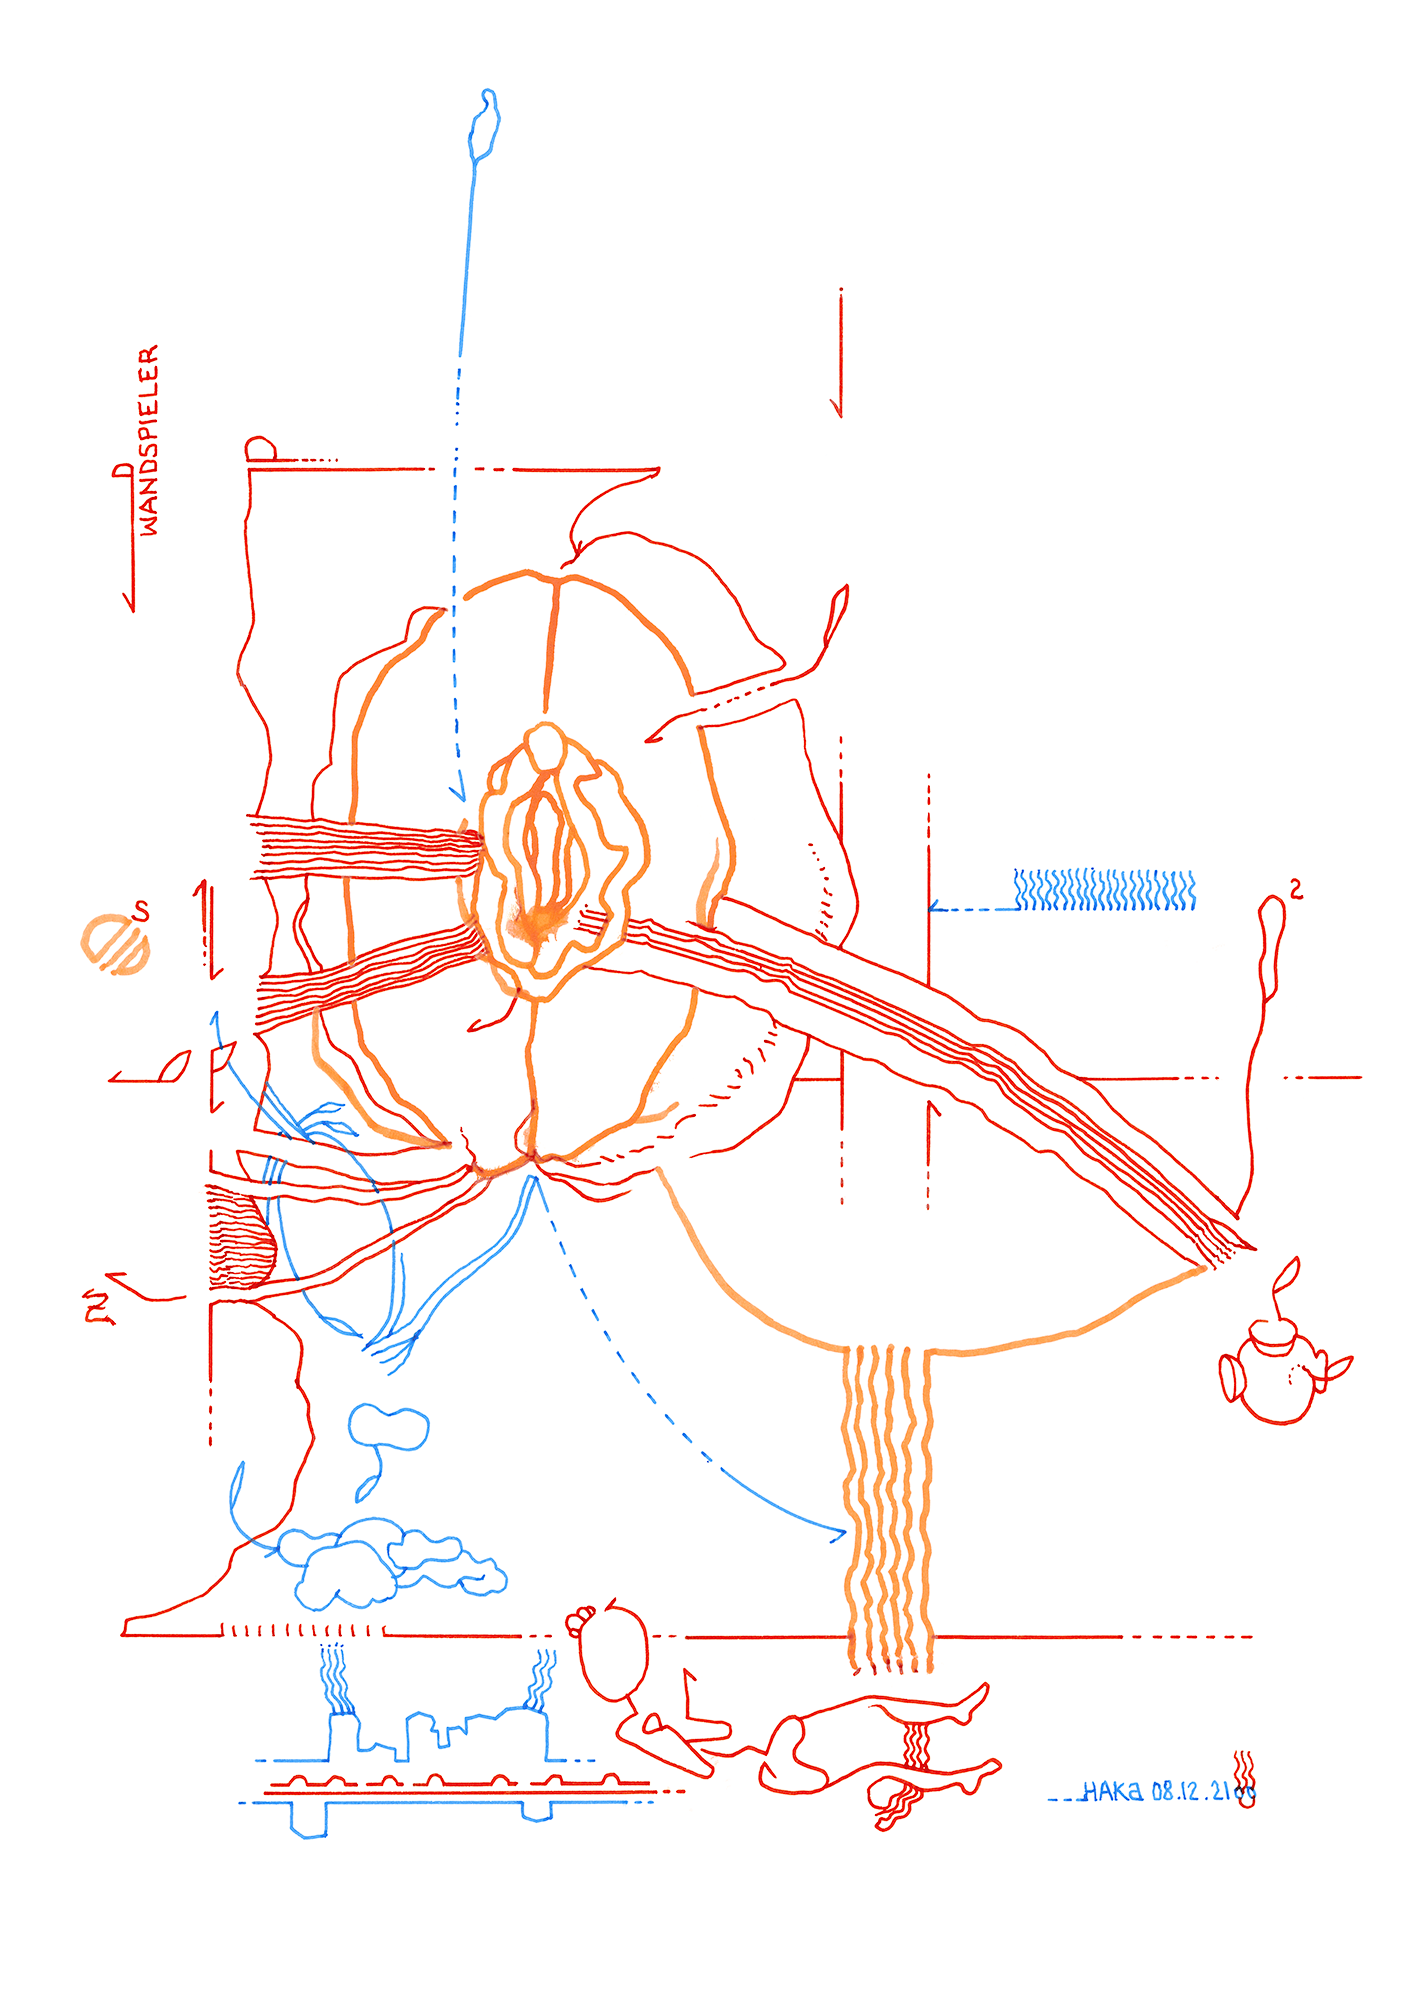 Hannes Kater: Tageszeichnung (Zeichnung/drawing) vom 08.12.2021 (1414 x 2000 Pixel)